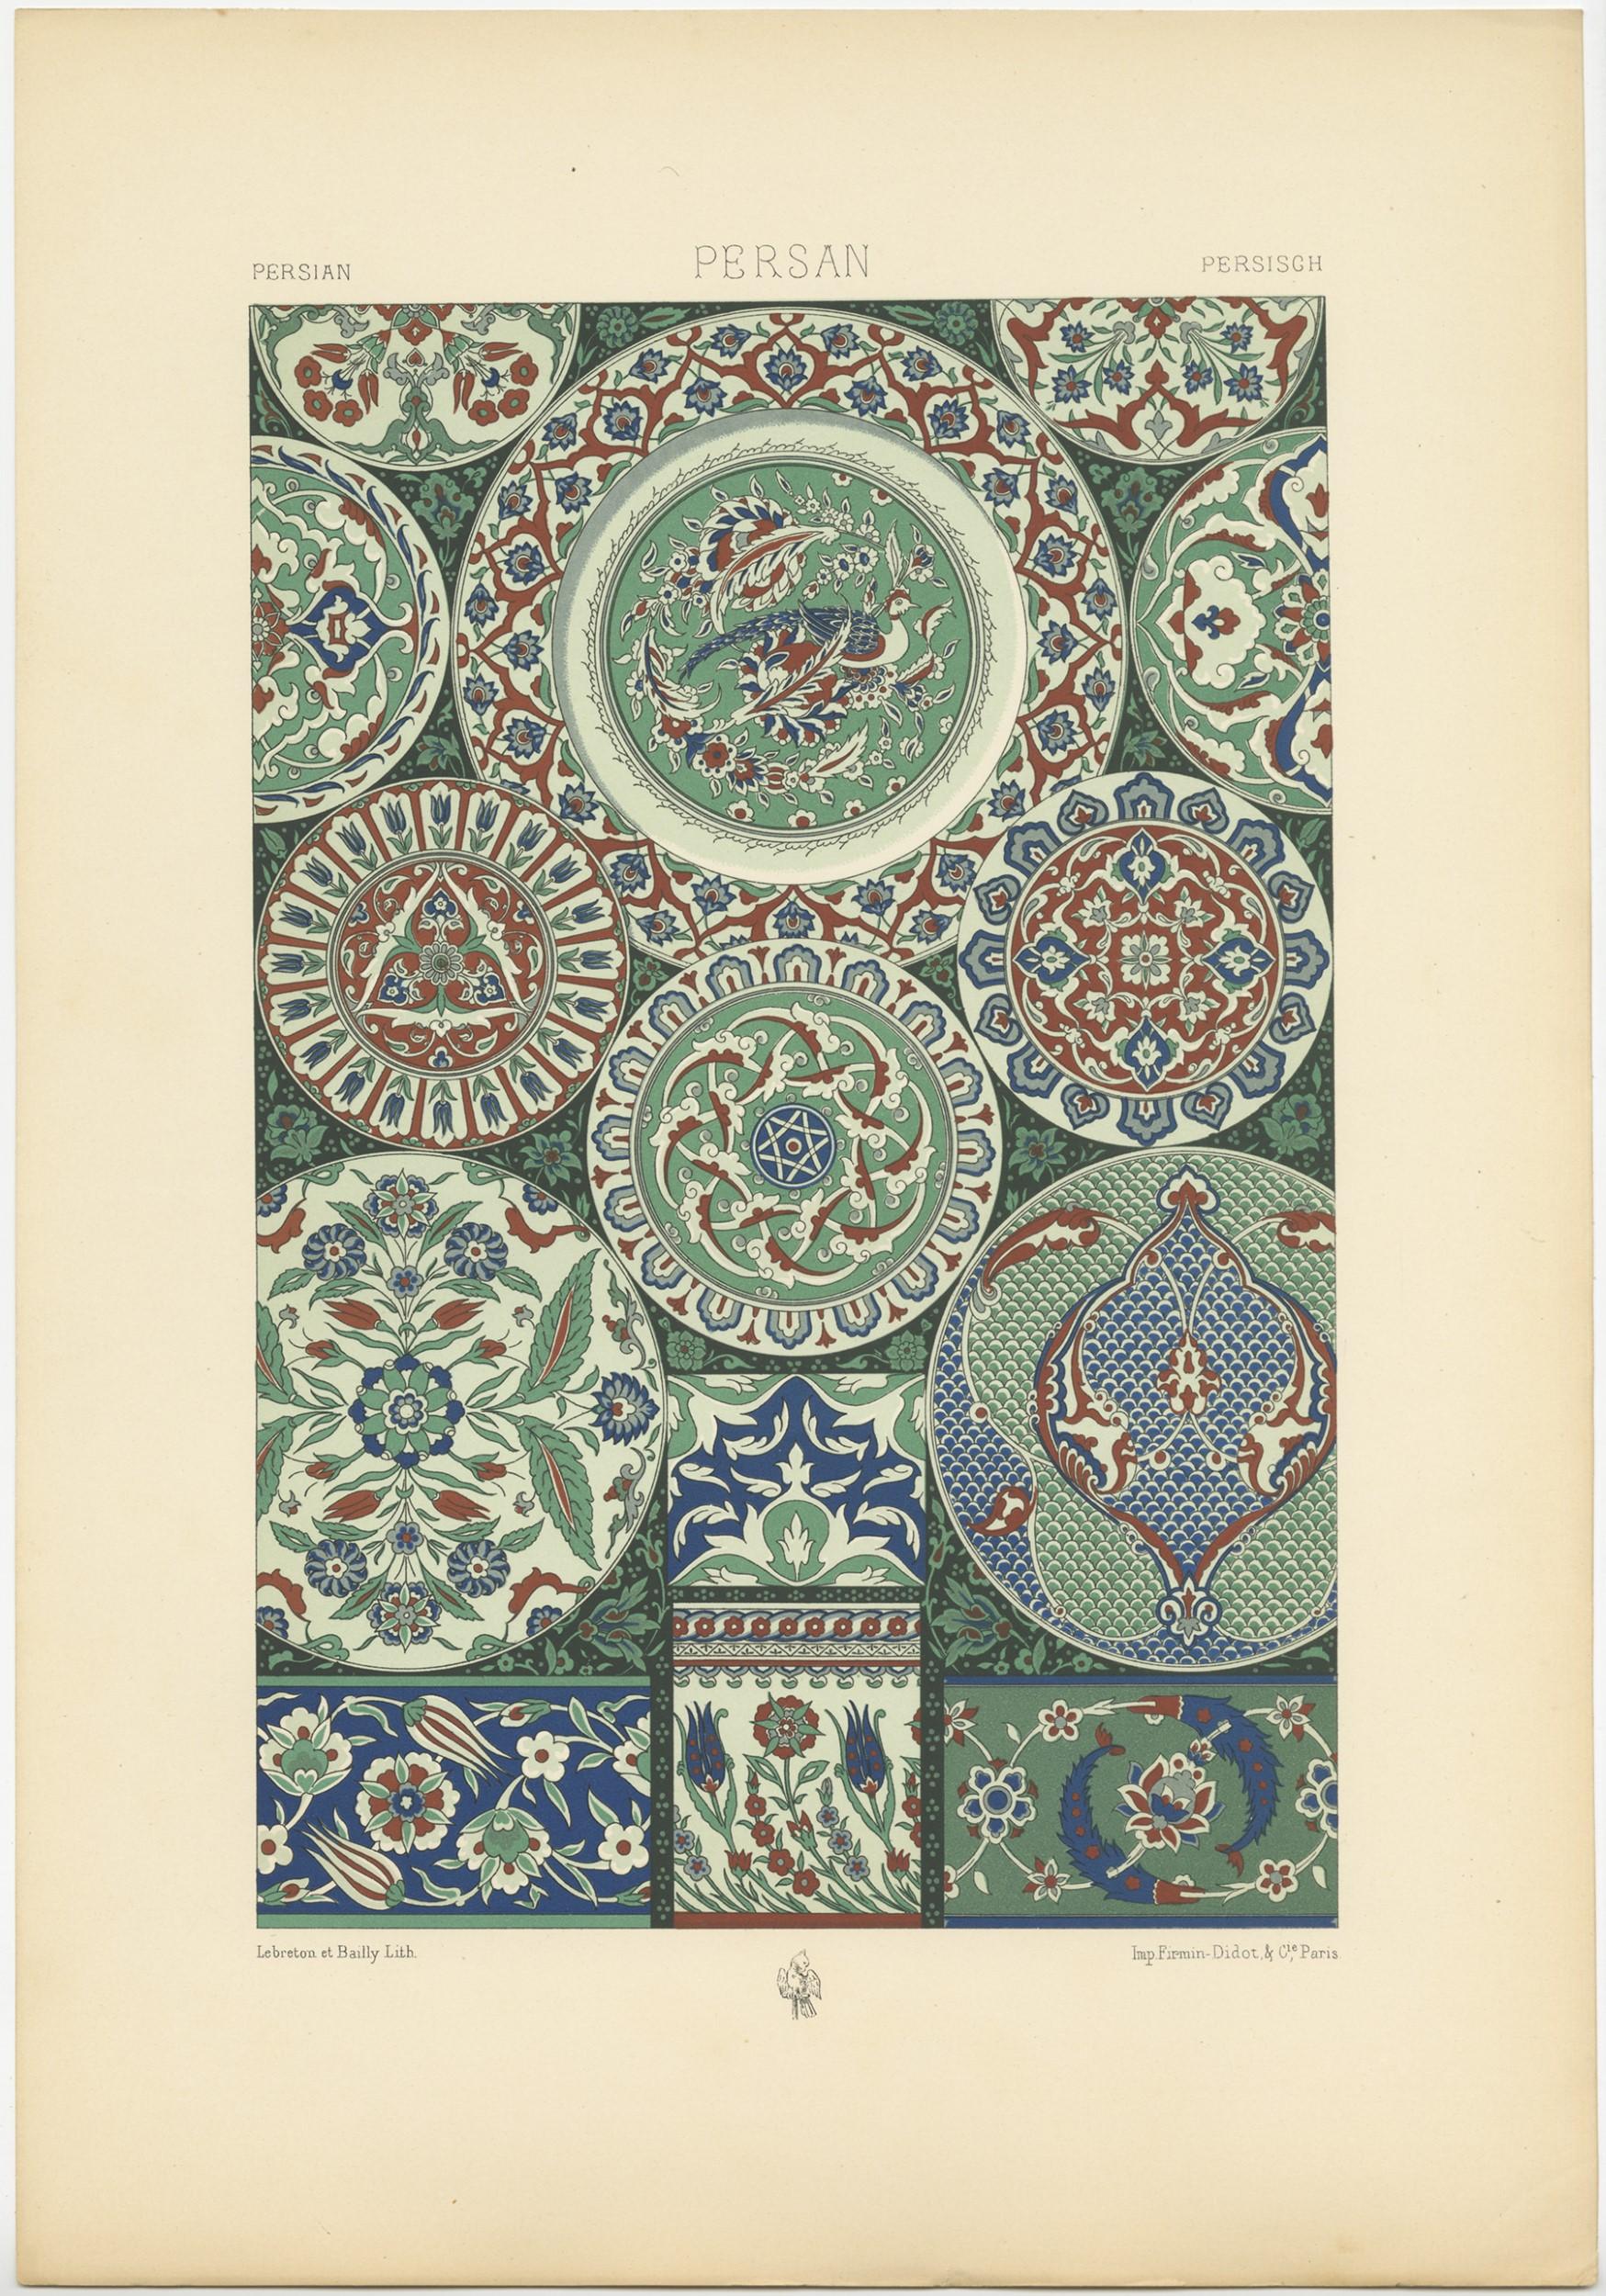 Antiker Druck mit dem Titel 'Persian - Persan - Persisch'. Chromolithografie persischer Ornamente und dekorativer Kunst. Dieser Druck stammt aus 